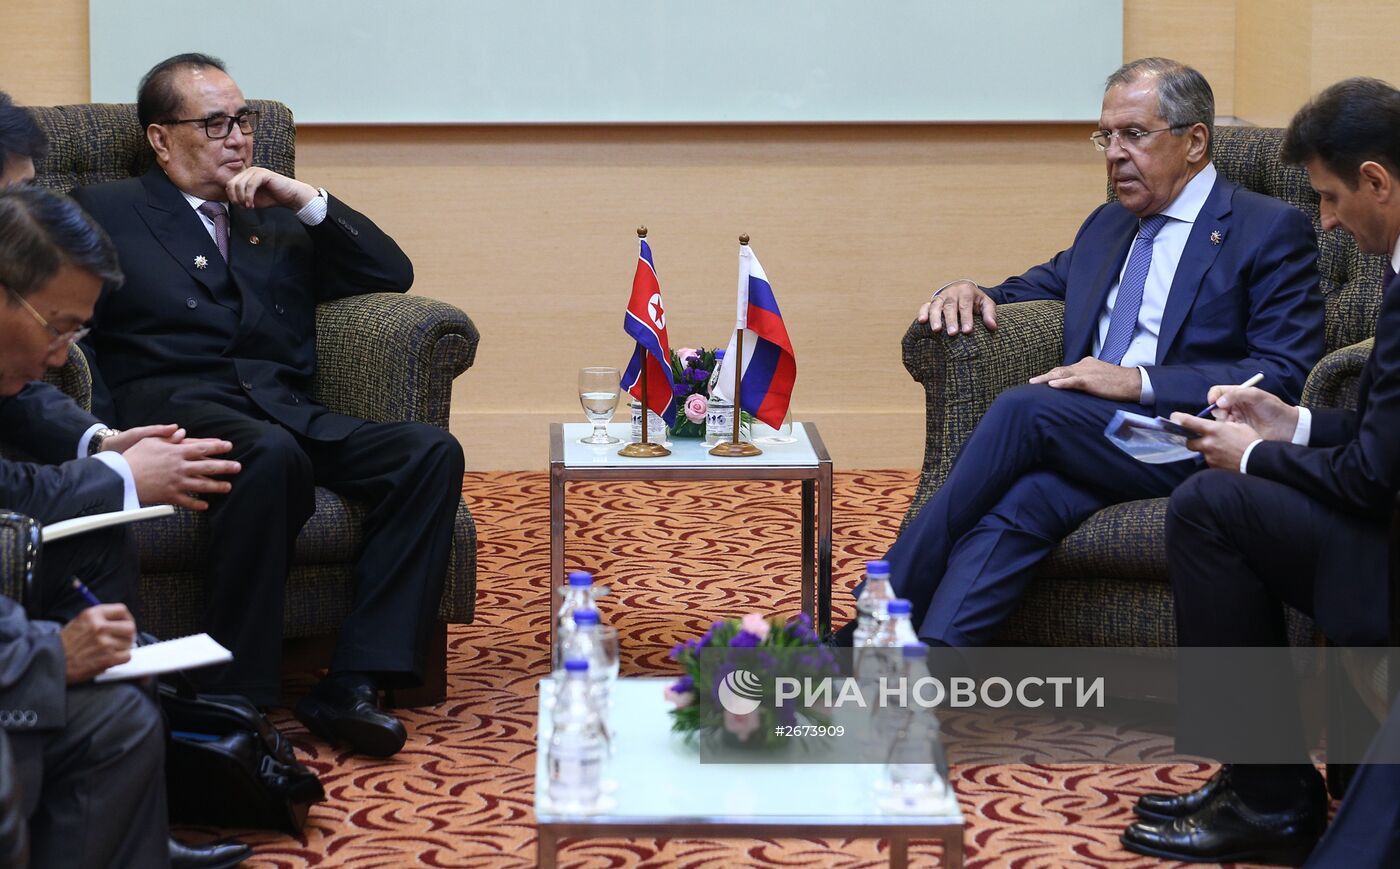 Рабочий визит министра иностранных дел РФ С.Лаврова в Малайзию